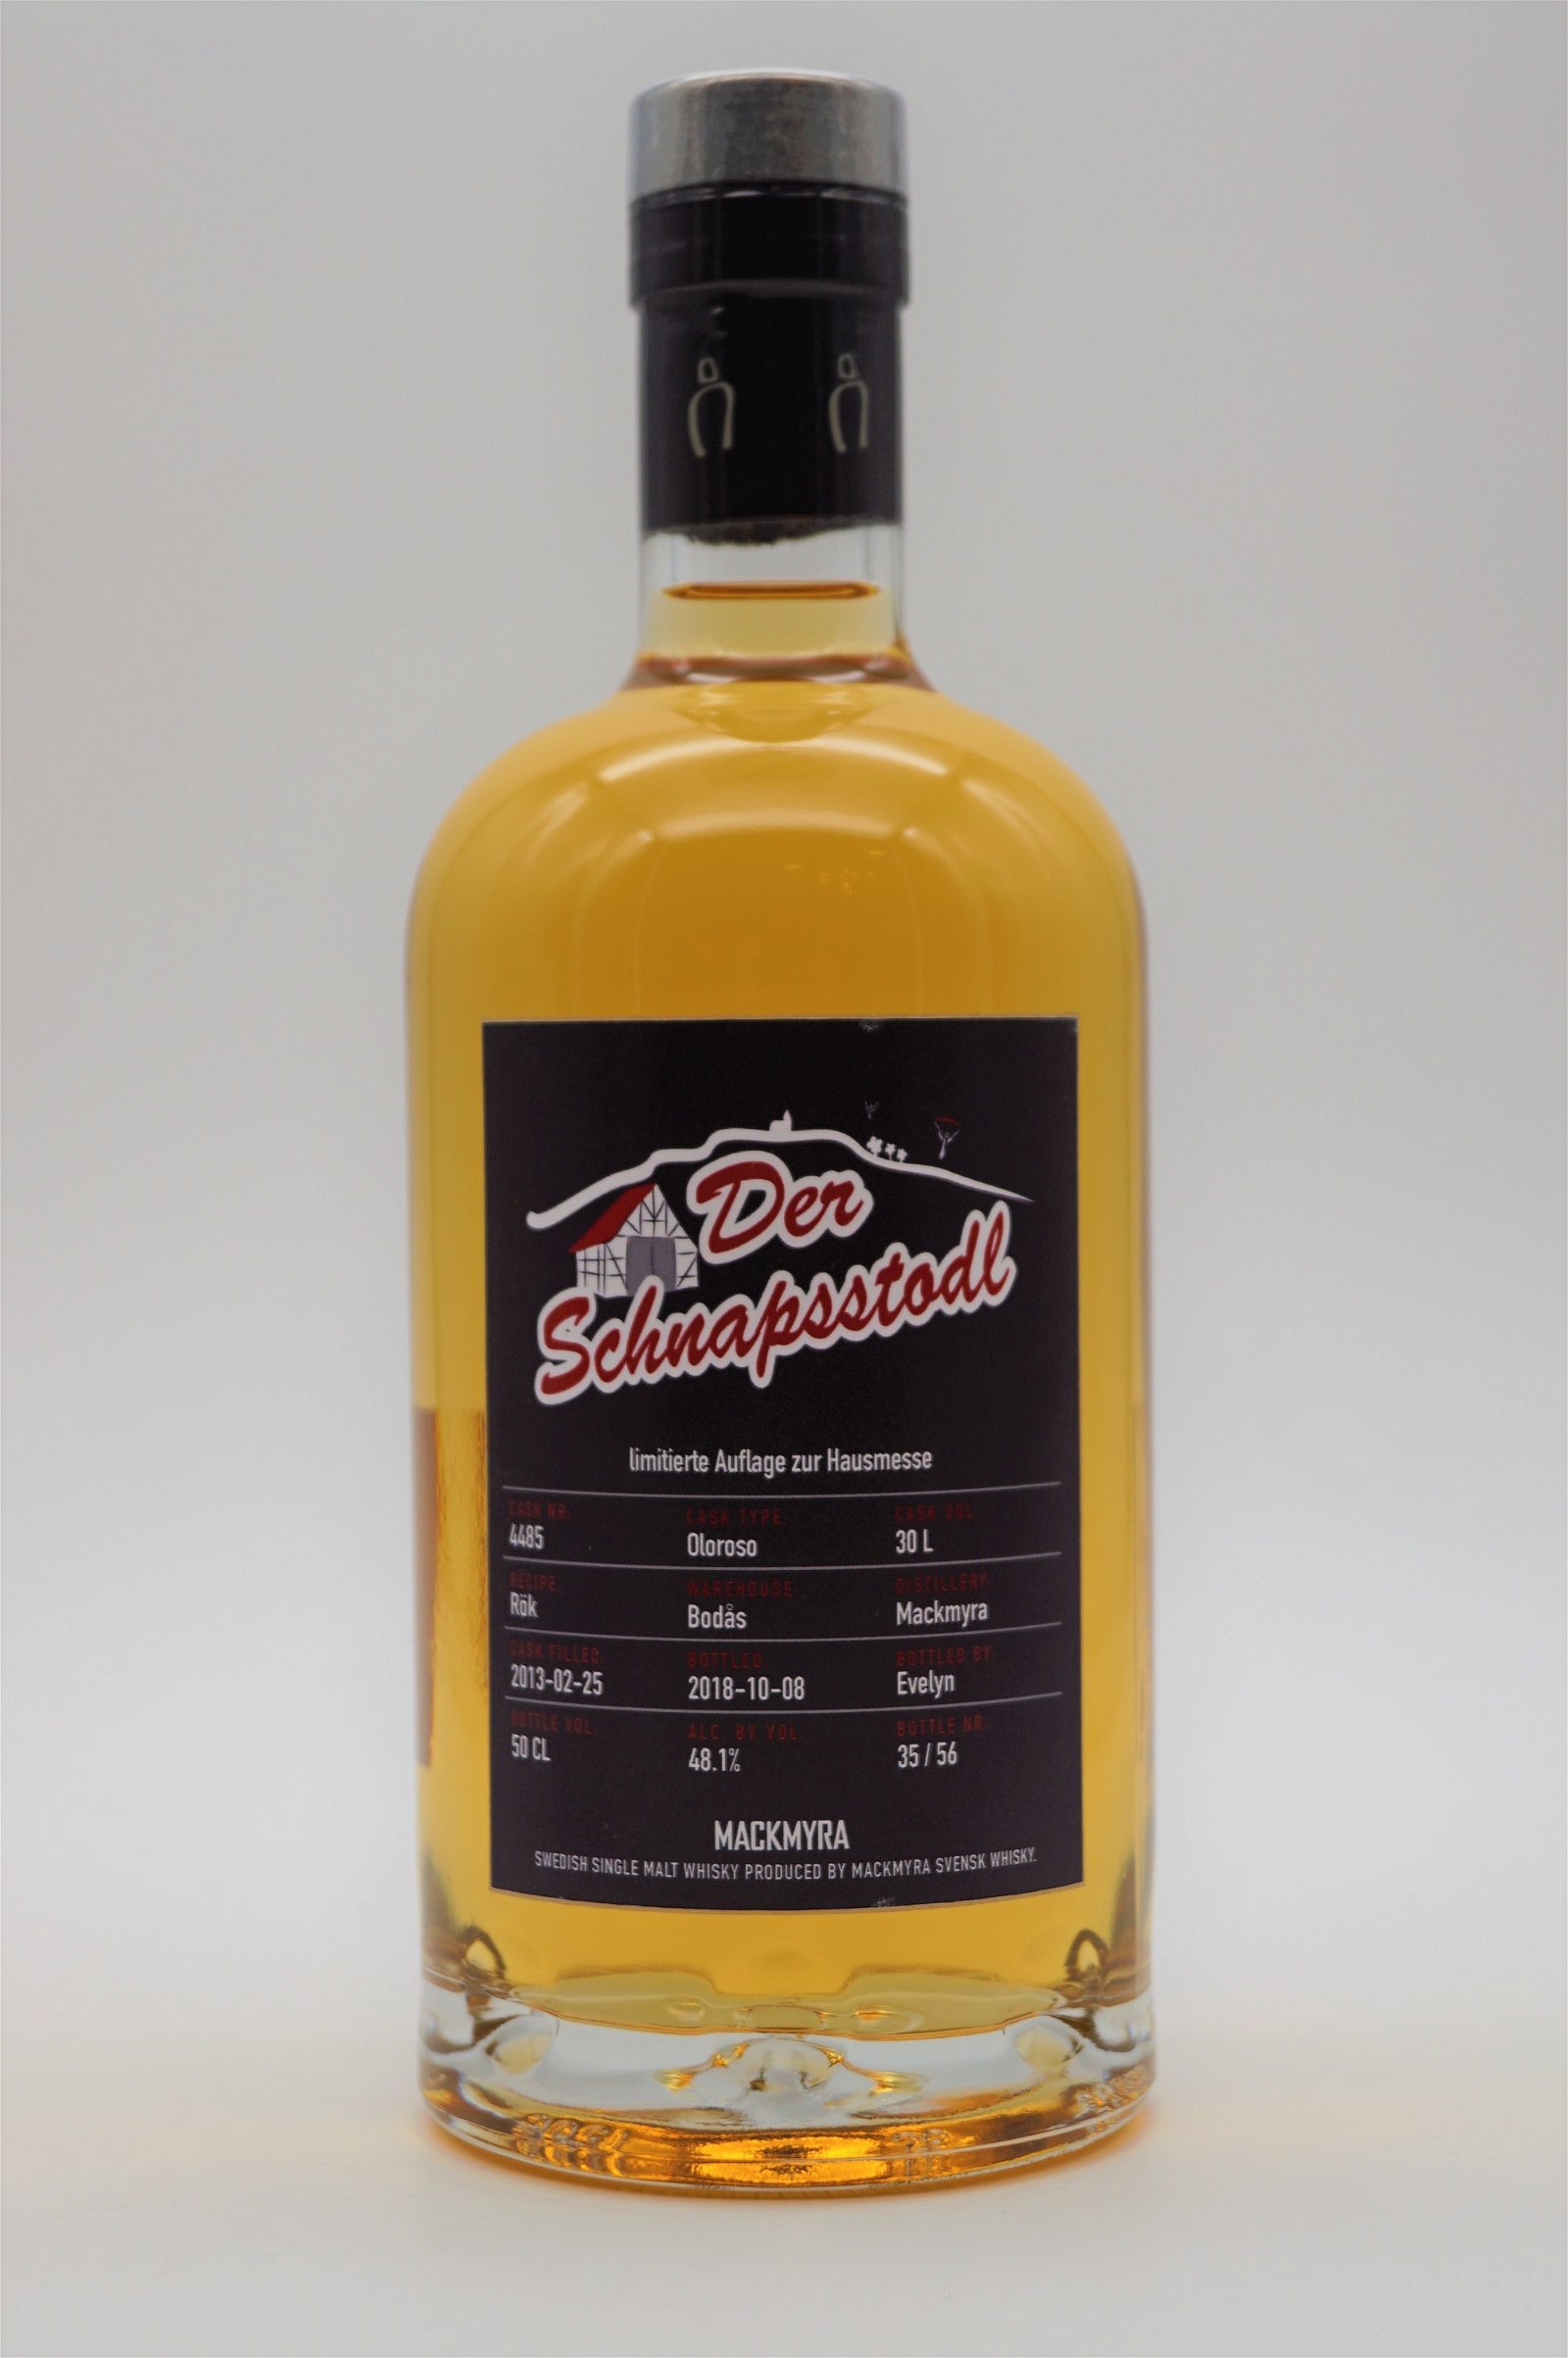 Der Schnapsstodl Single Malt Whisky 1. Limitierte Auflage zum 1. Genusstag